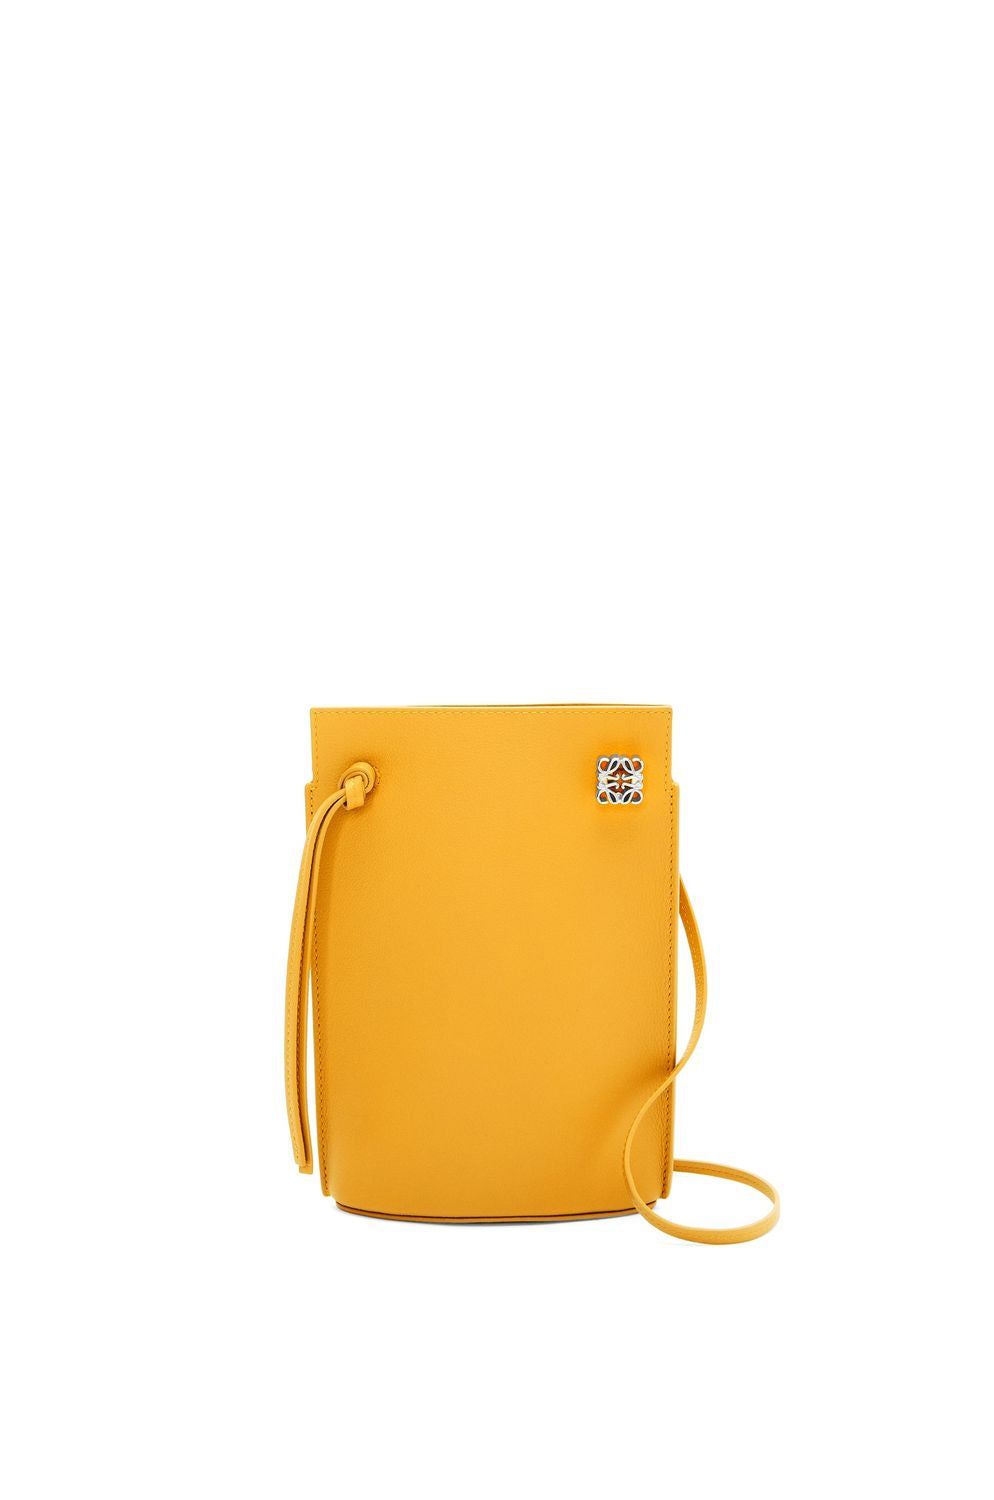 Sunflower Leather Shoulder & Crossbody Bag for Women